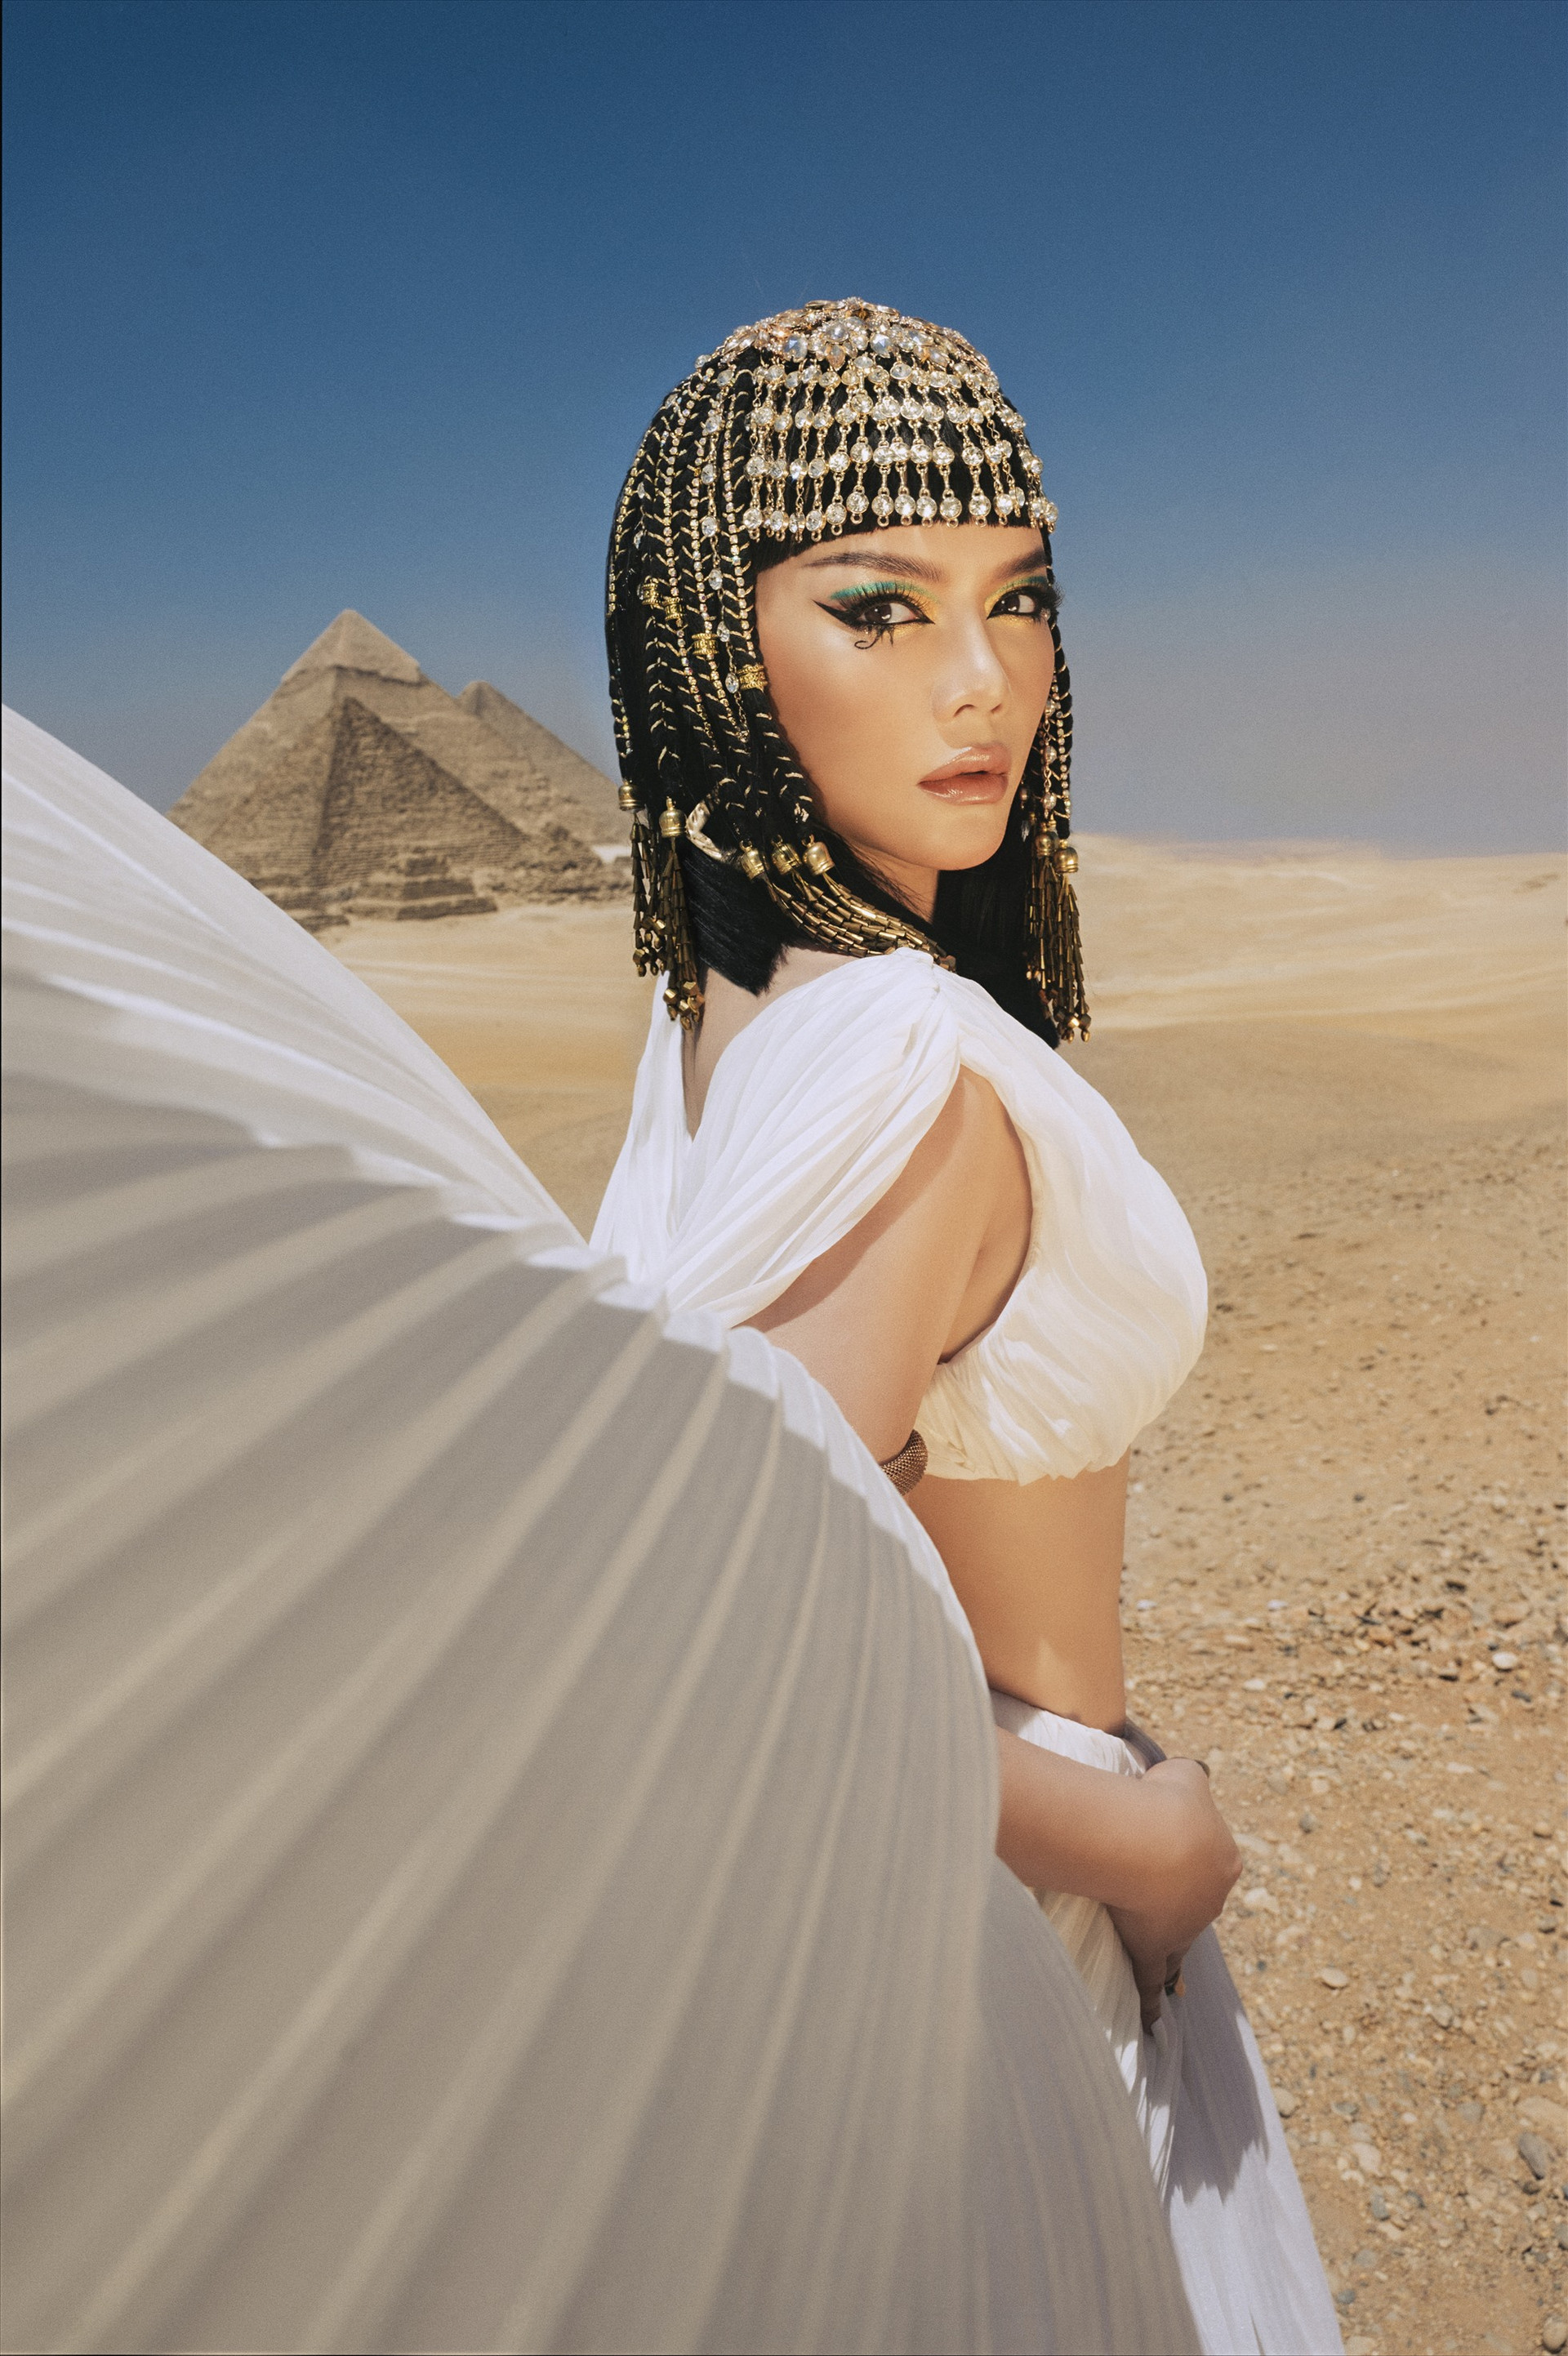 Còn NTK Micae Vu & Đỗ Long lấy cảm hứng từ nữ hoàng Cleopatra. Nữ diễn viên chọn kiểu tóc ngắn ngang vai với mái bằng và bộ đầm tua rua có thiết kế vừa tôn dáng, vừa nóng bỏng. Ảnh: NSCC.